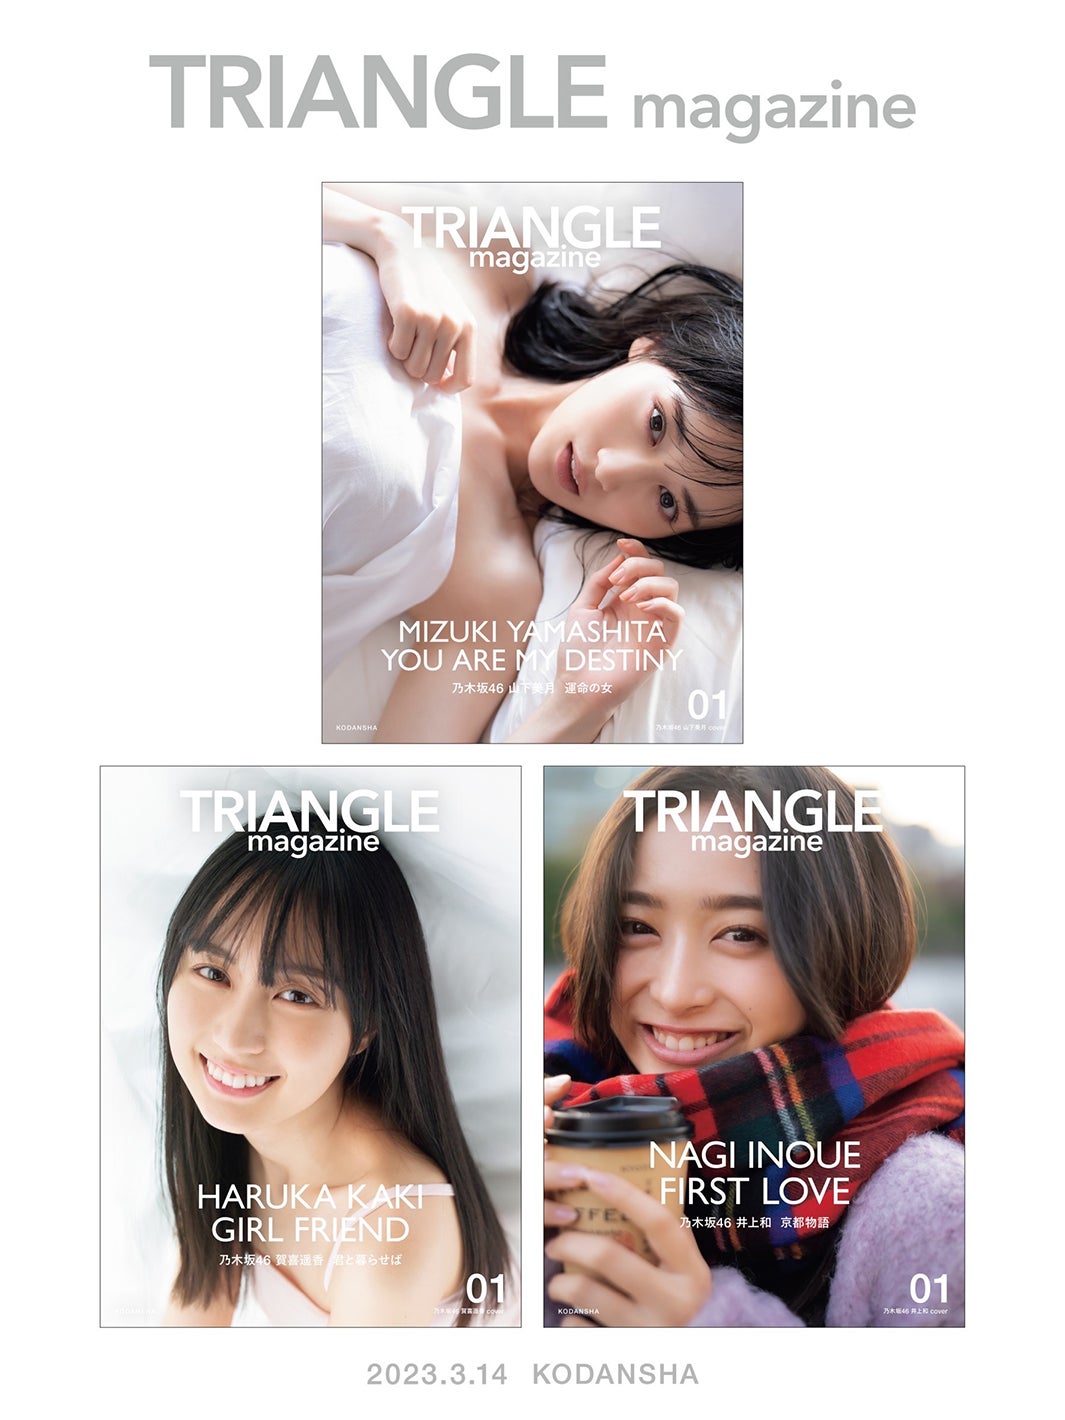 まるごと1冊乃木坂46特集”新ビジュアル誌「TRIANGLE magazine」幻の